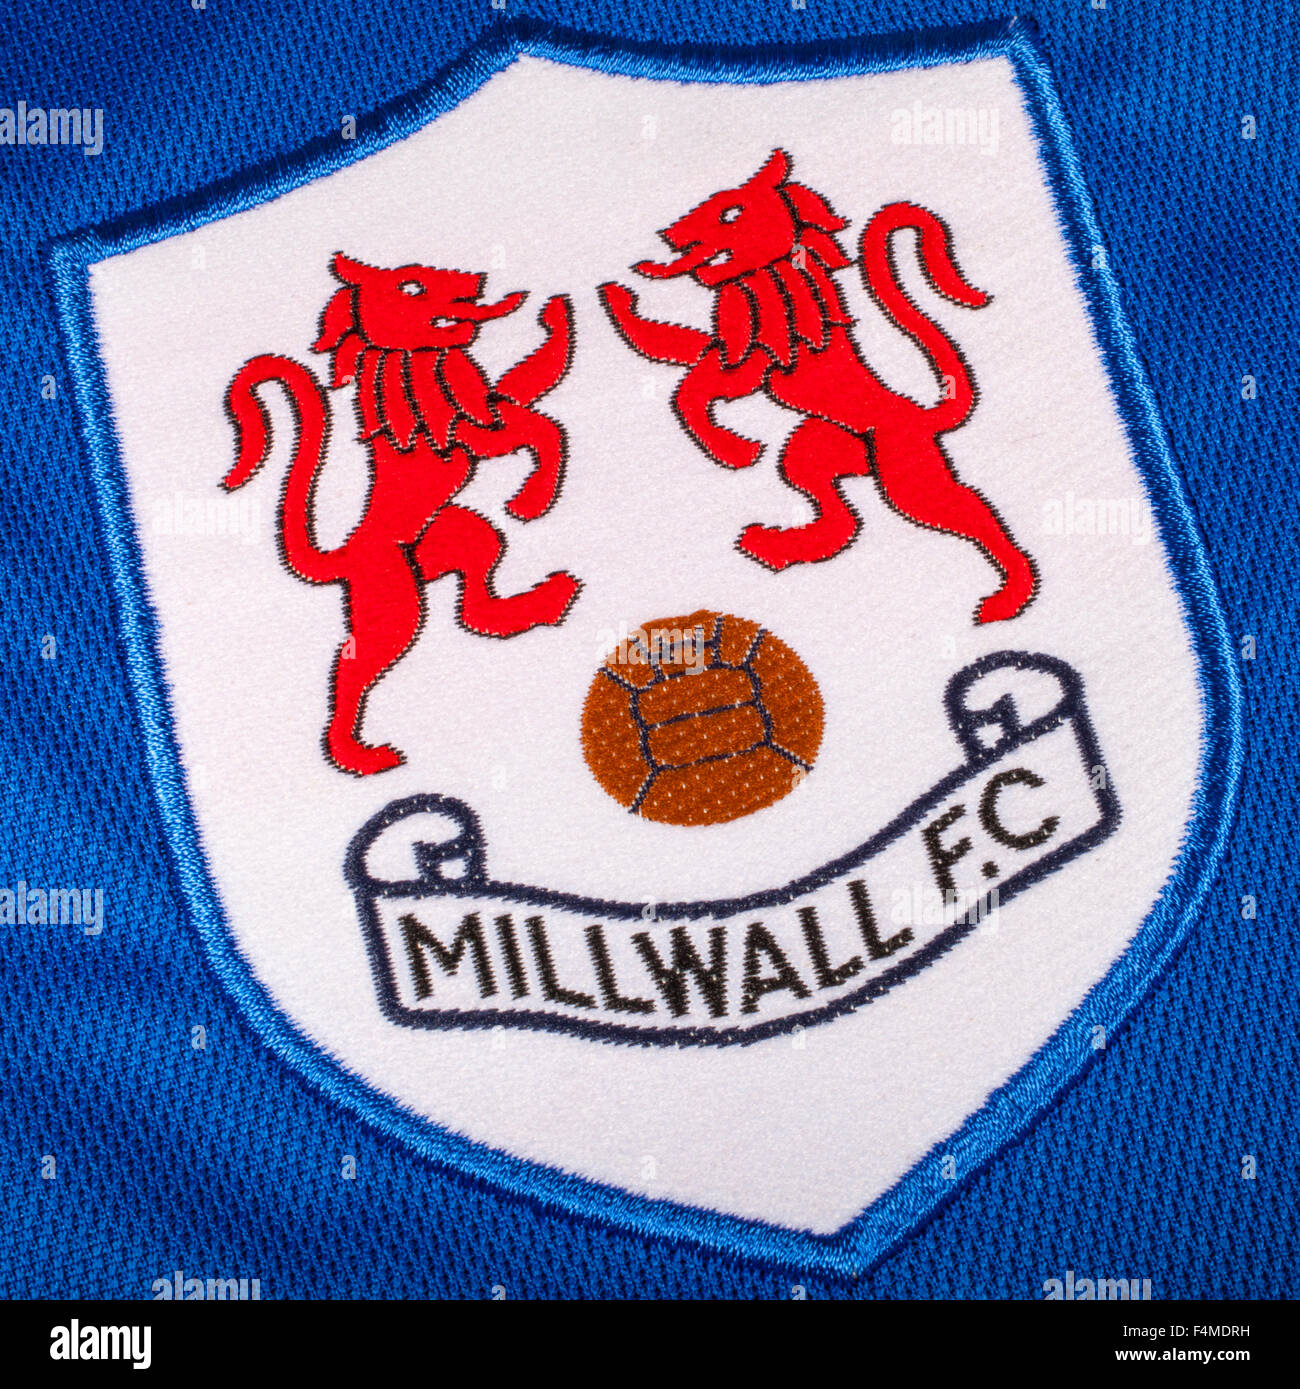 MILLWALL F.C - MILLWALL F.C added a new photo.